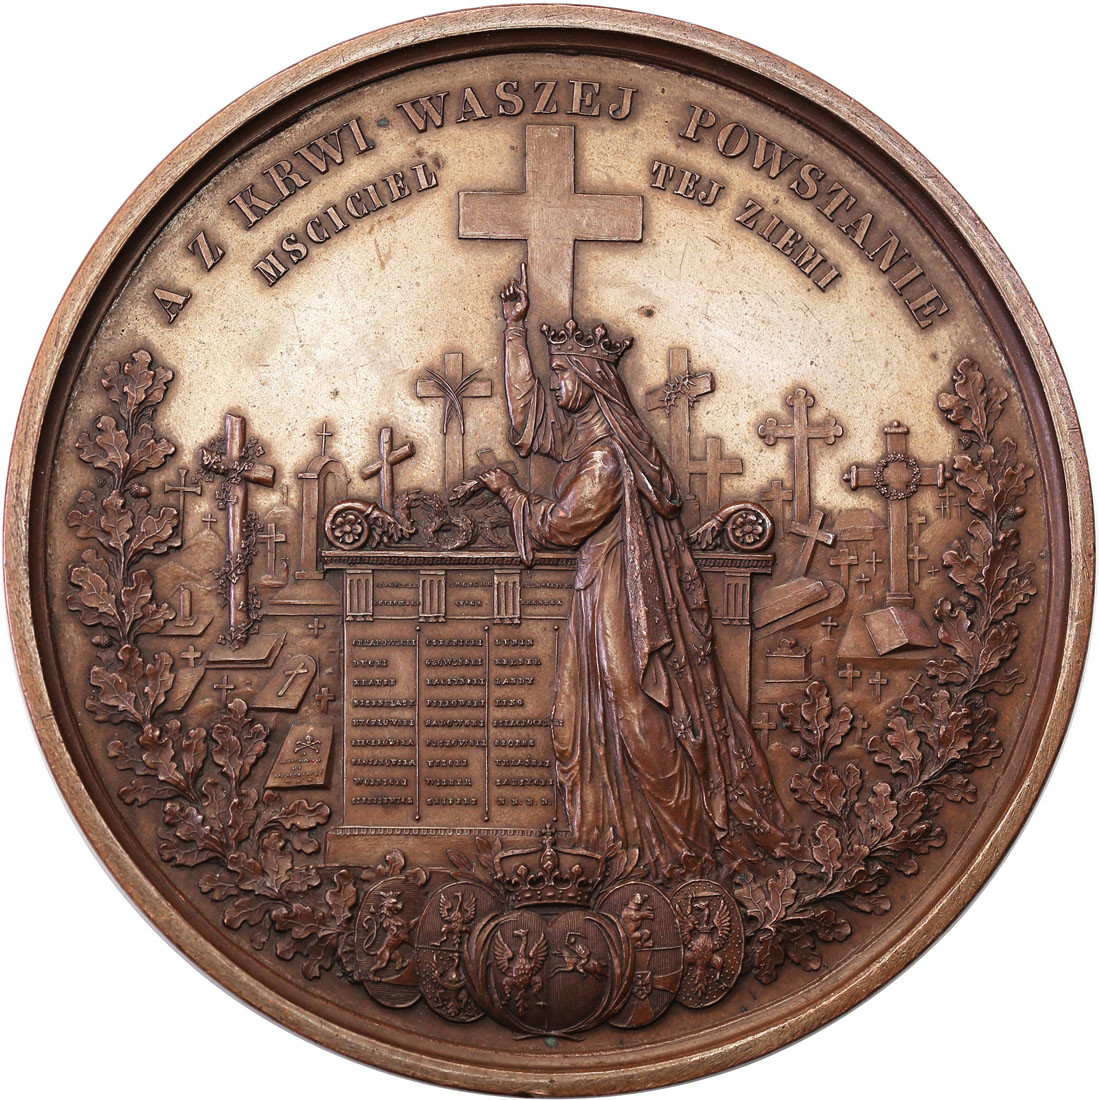 Polska pod zaborami. Medal Żałoby Narodowej 1861, braz - RZADKI